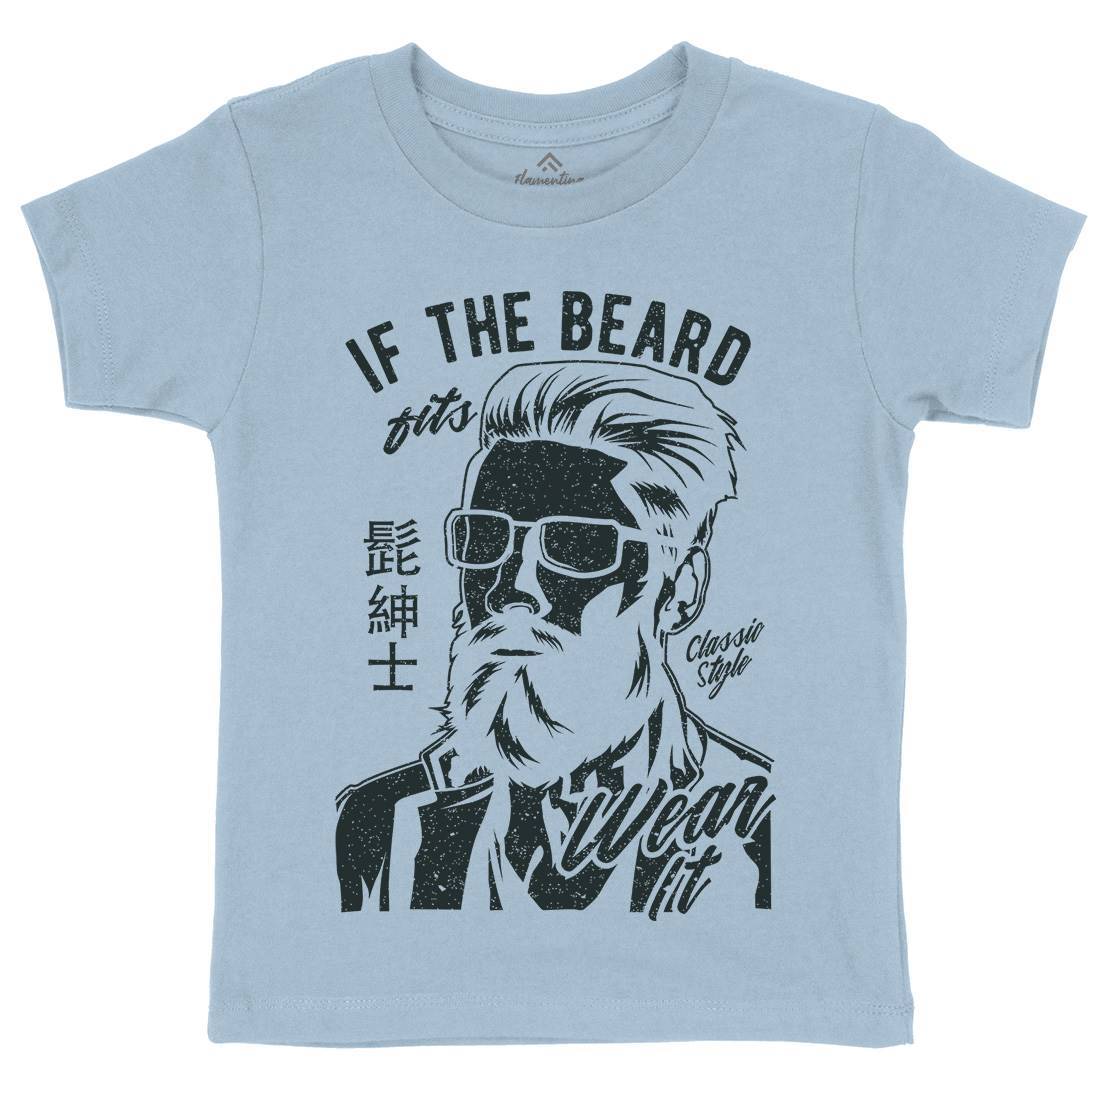 If The Beard Fits Kids Crew Neck T-Shirt Barber A692